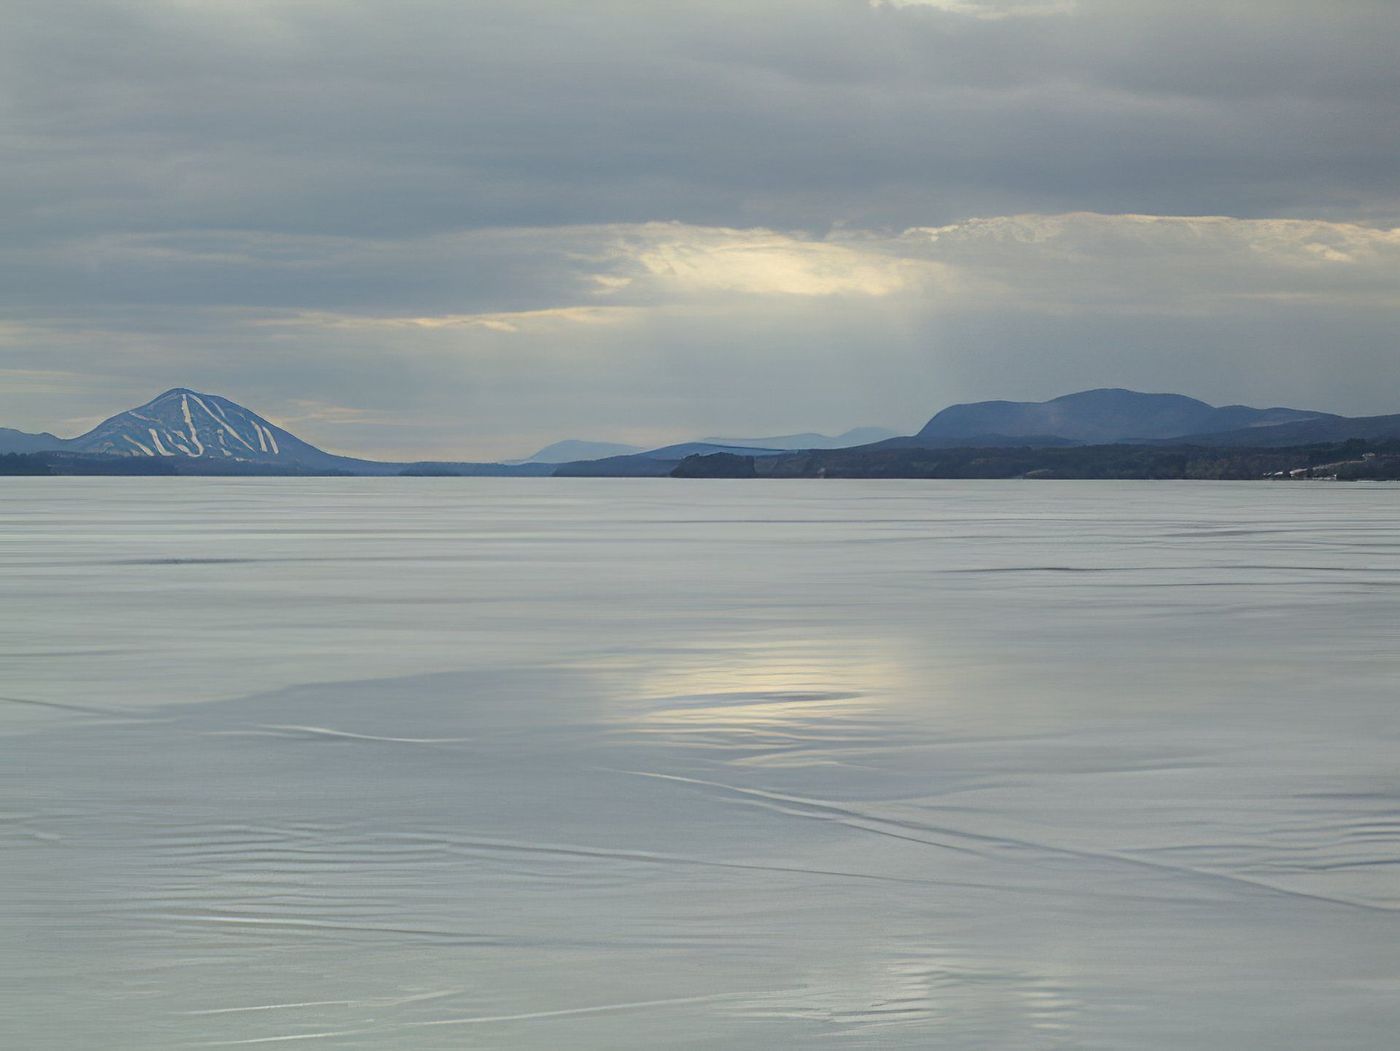 Le lac Memphremagog gelé